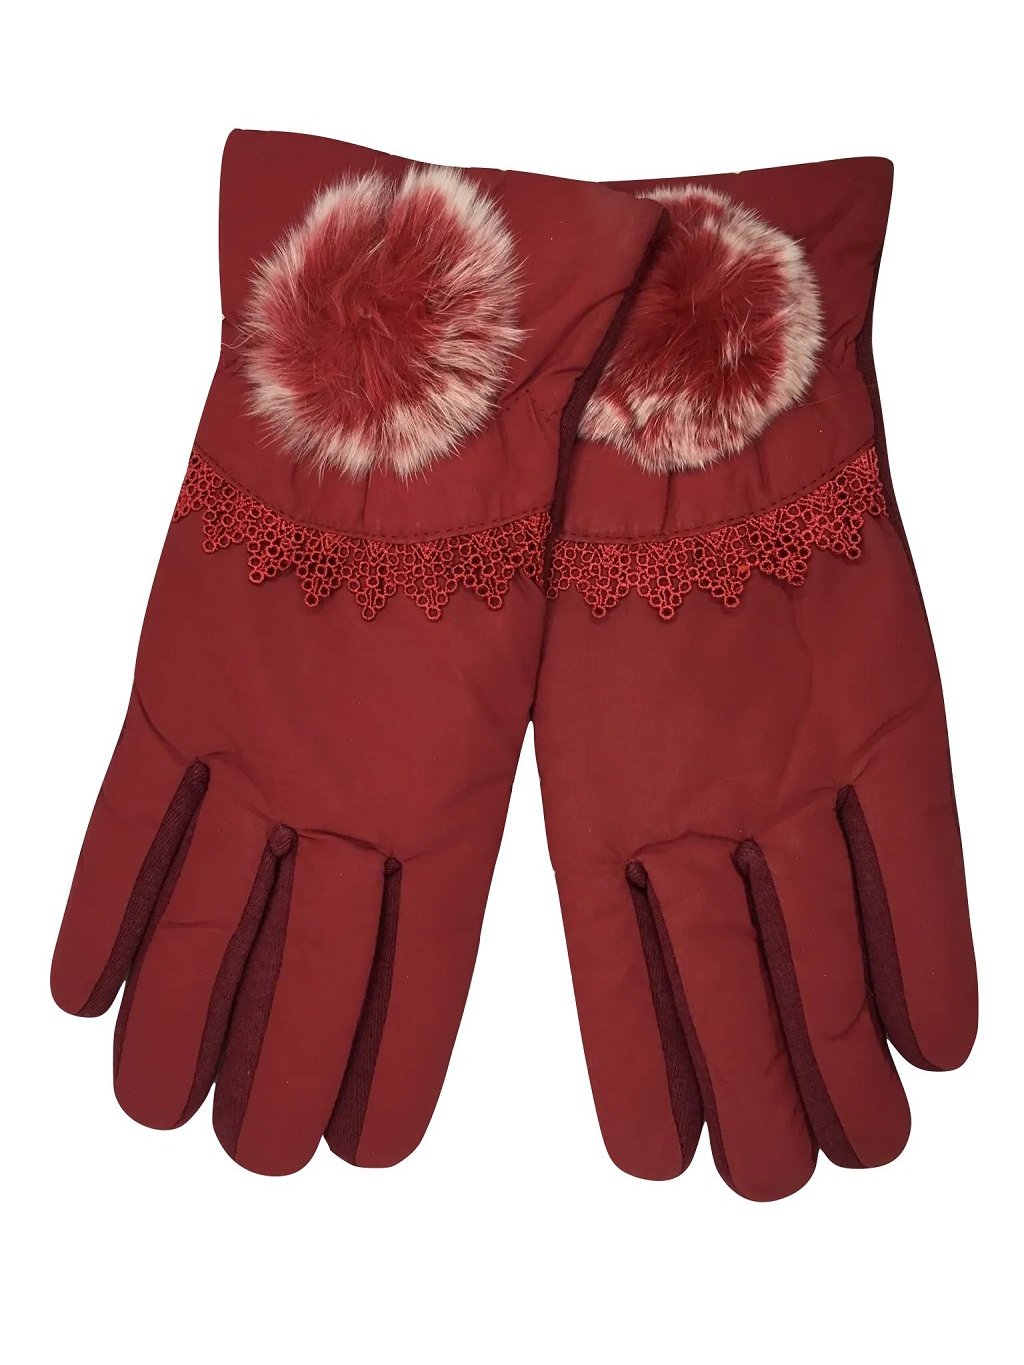 Nueve guantes de mujer que querrás tener esta temporada para protegerte del  frío